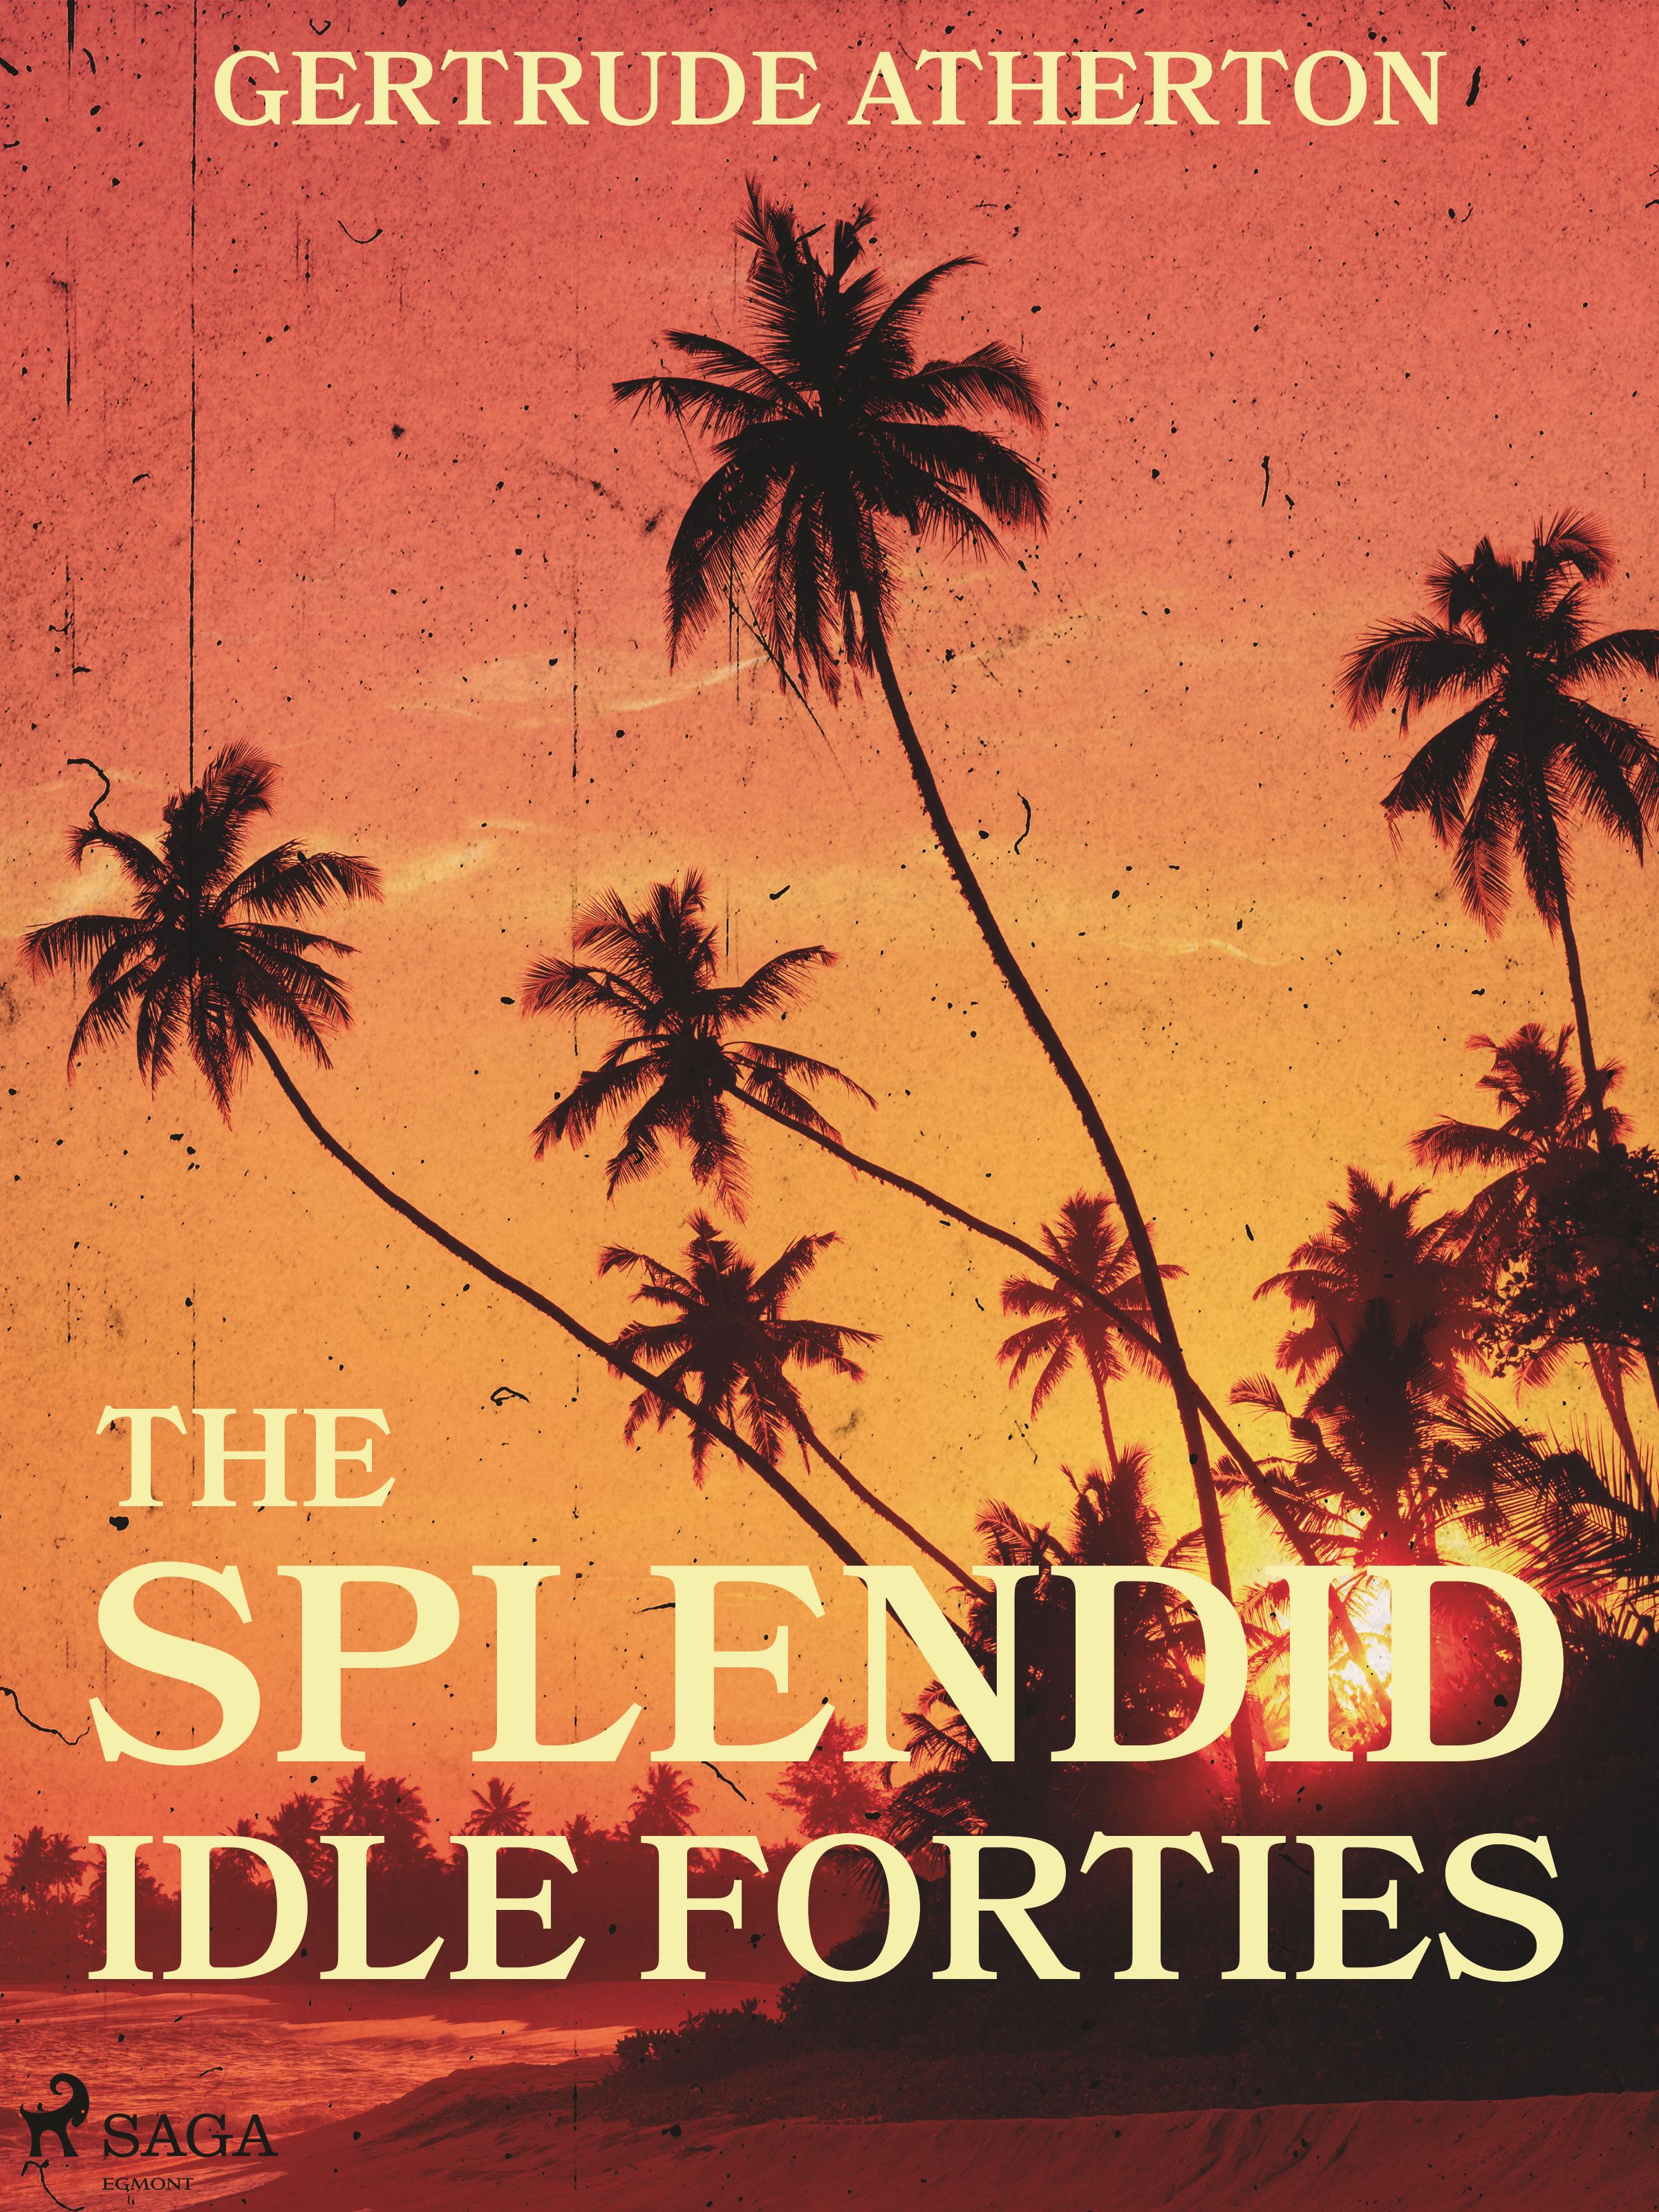 The Splendid, Idle Forties, e-bog af Gertrude Atherton